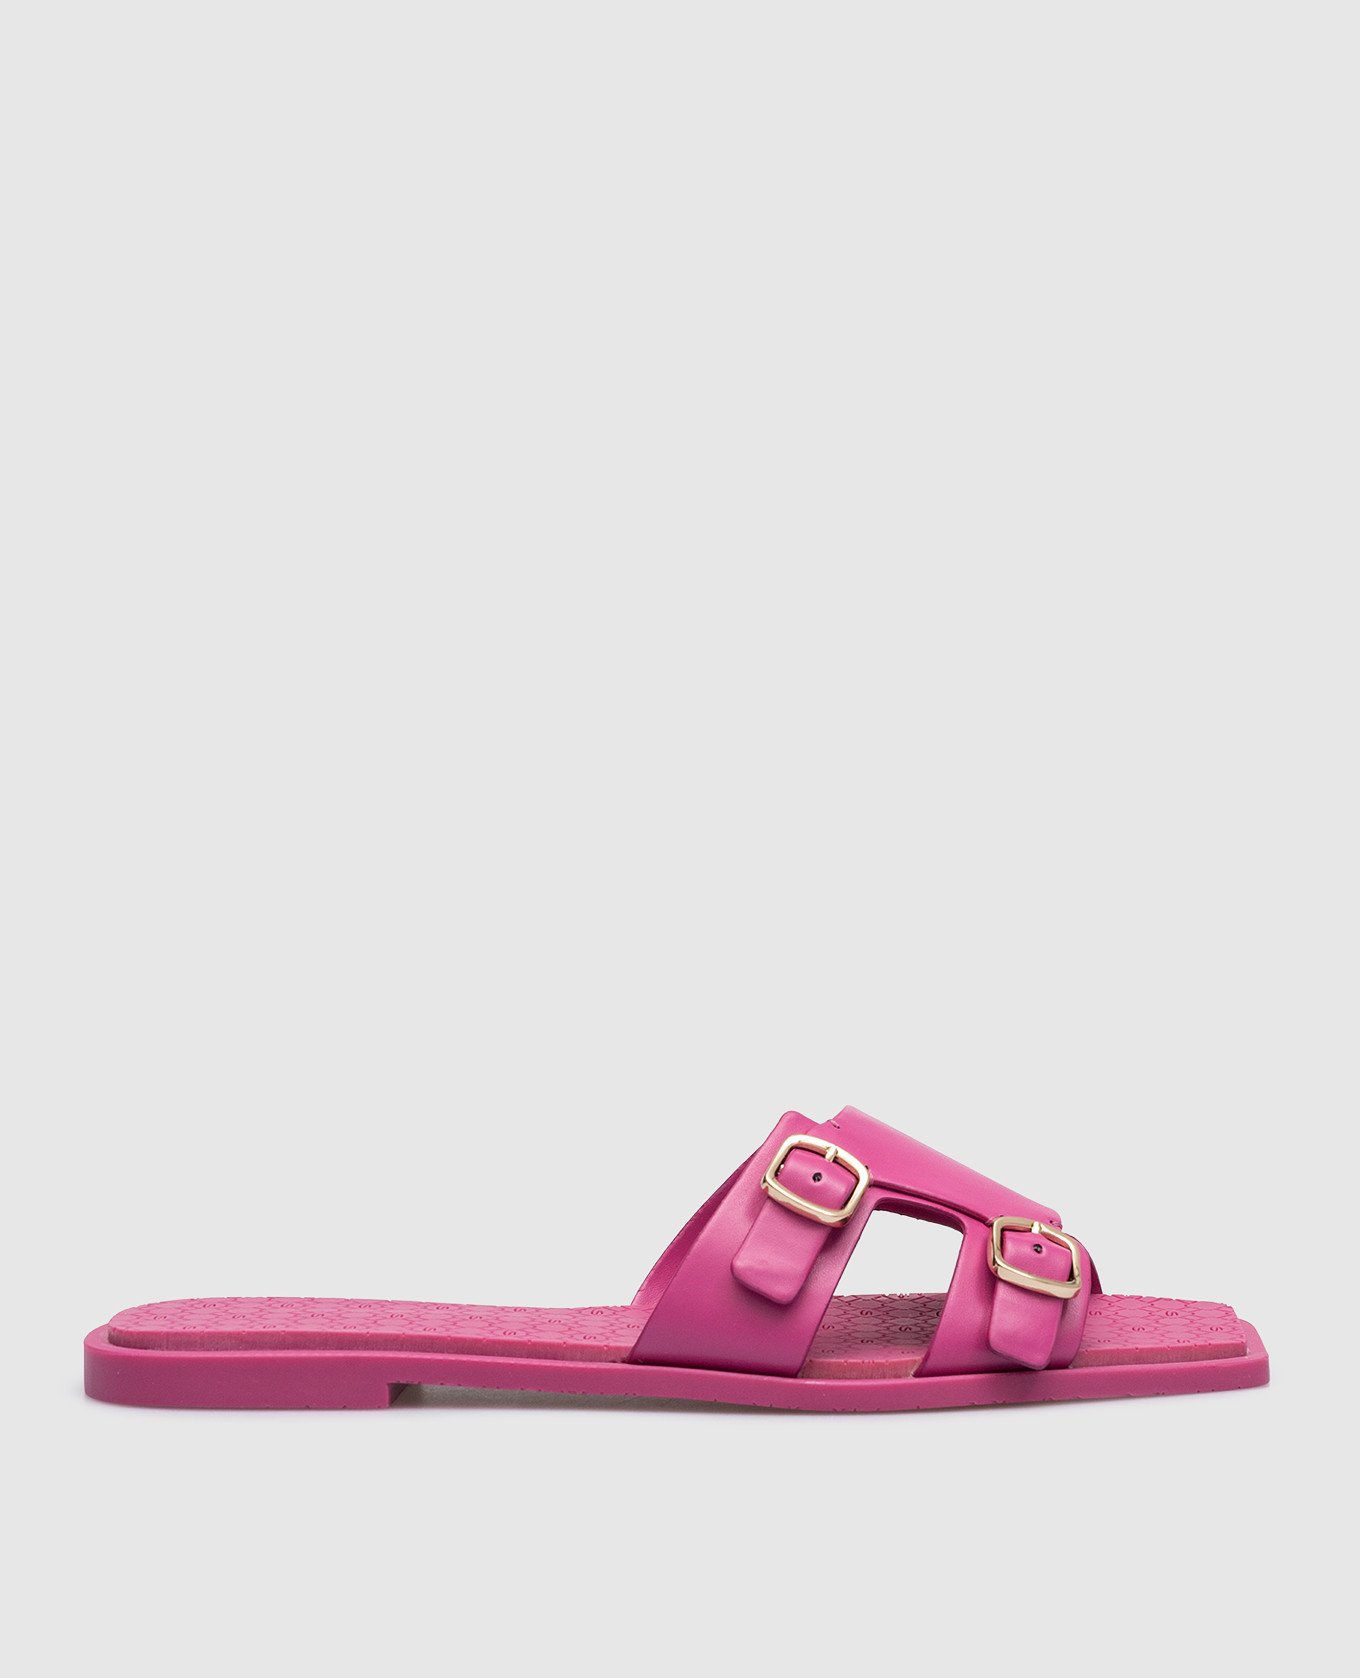 Pink leather flip flops